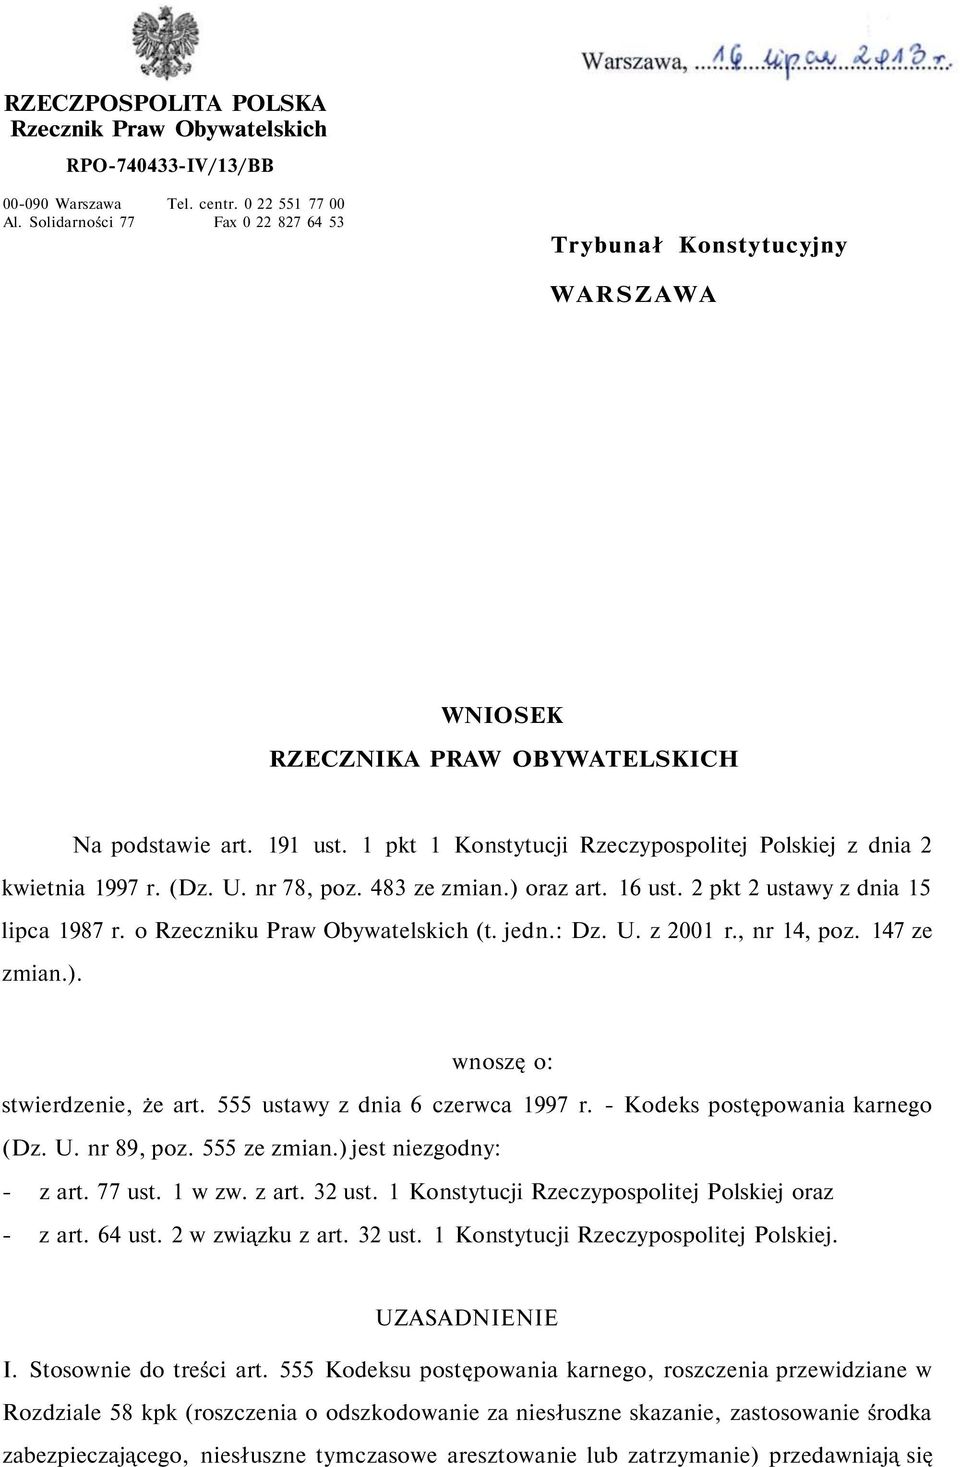 1 pkt 1 Konstytucji Rzeczypospolitej Polskiej z dnia 2 kwietnia 1997 r. (Dz. U. nr 78, poz. 483 ze zmian.) oraz art. 16 ust. 2 pkt 2 ustawy z dnia 15 lipca 1987 r. o Rzeczniku Praw Obywatelskich (t.